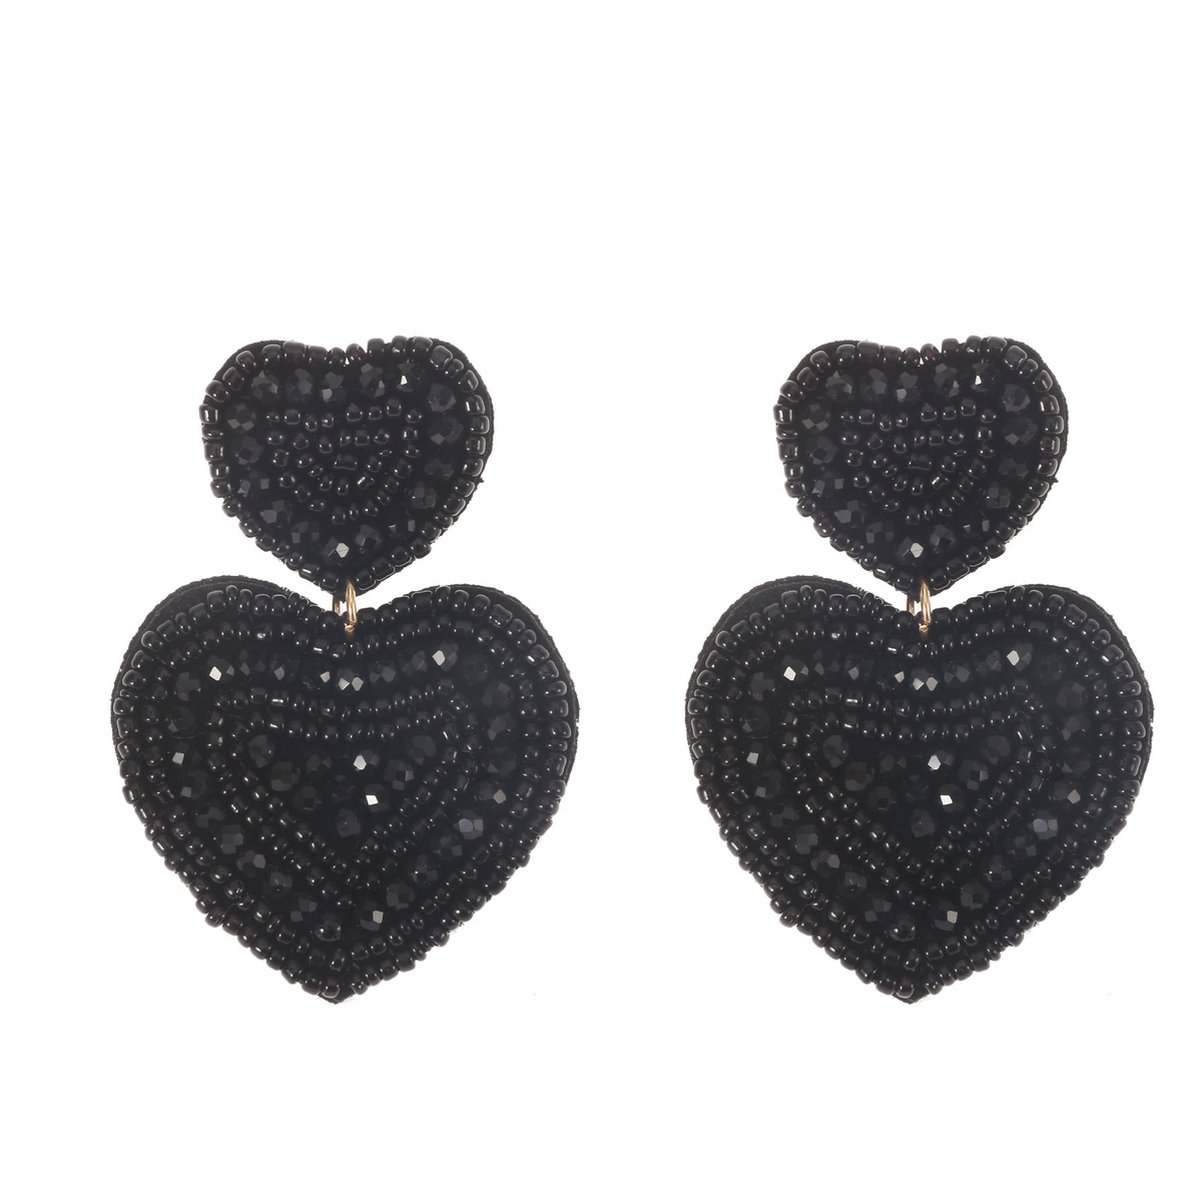 The Jewellery Club - Nove earrings black - Oorbellen - Dames oorbellen - Kralen oorbellen - Zwart - 4,5 cm - The Jewellery Club